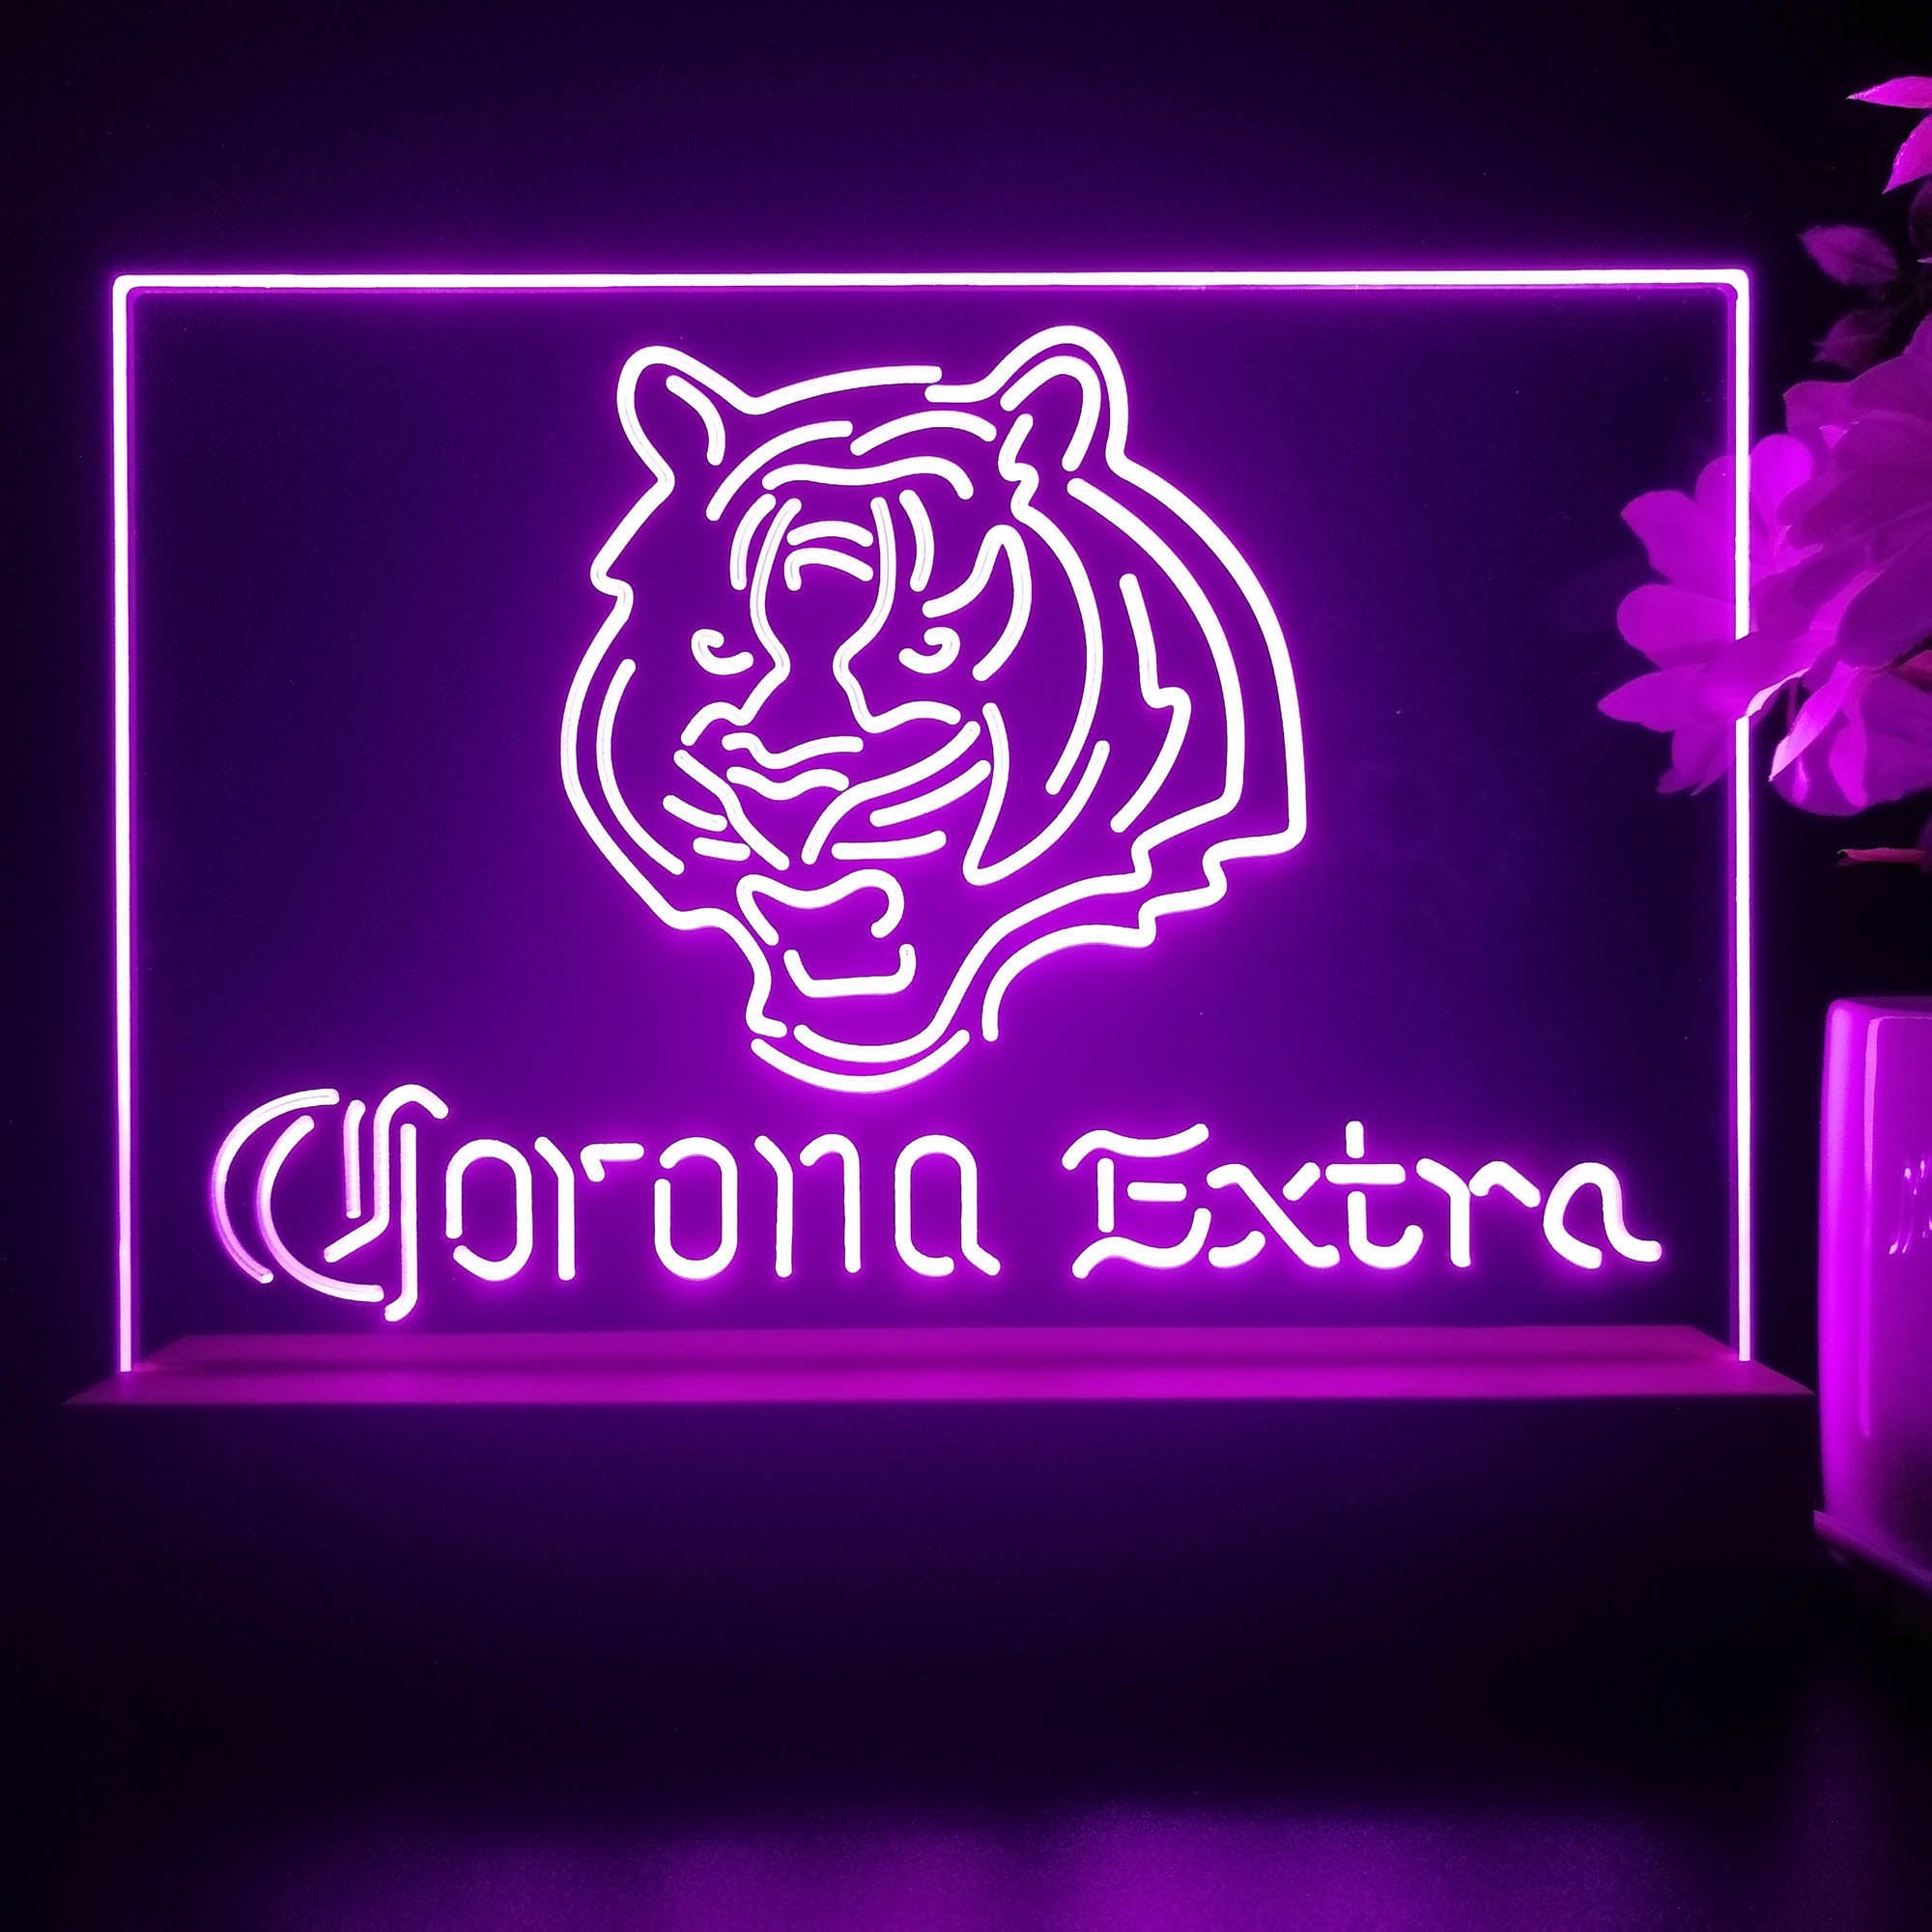 Corona Extra Bar Cincinnati Bengals Est. 1968 Night Light Pub Bar Lamp